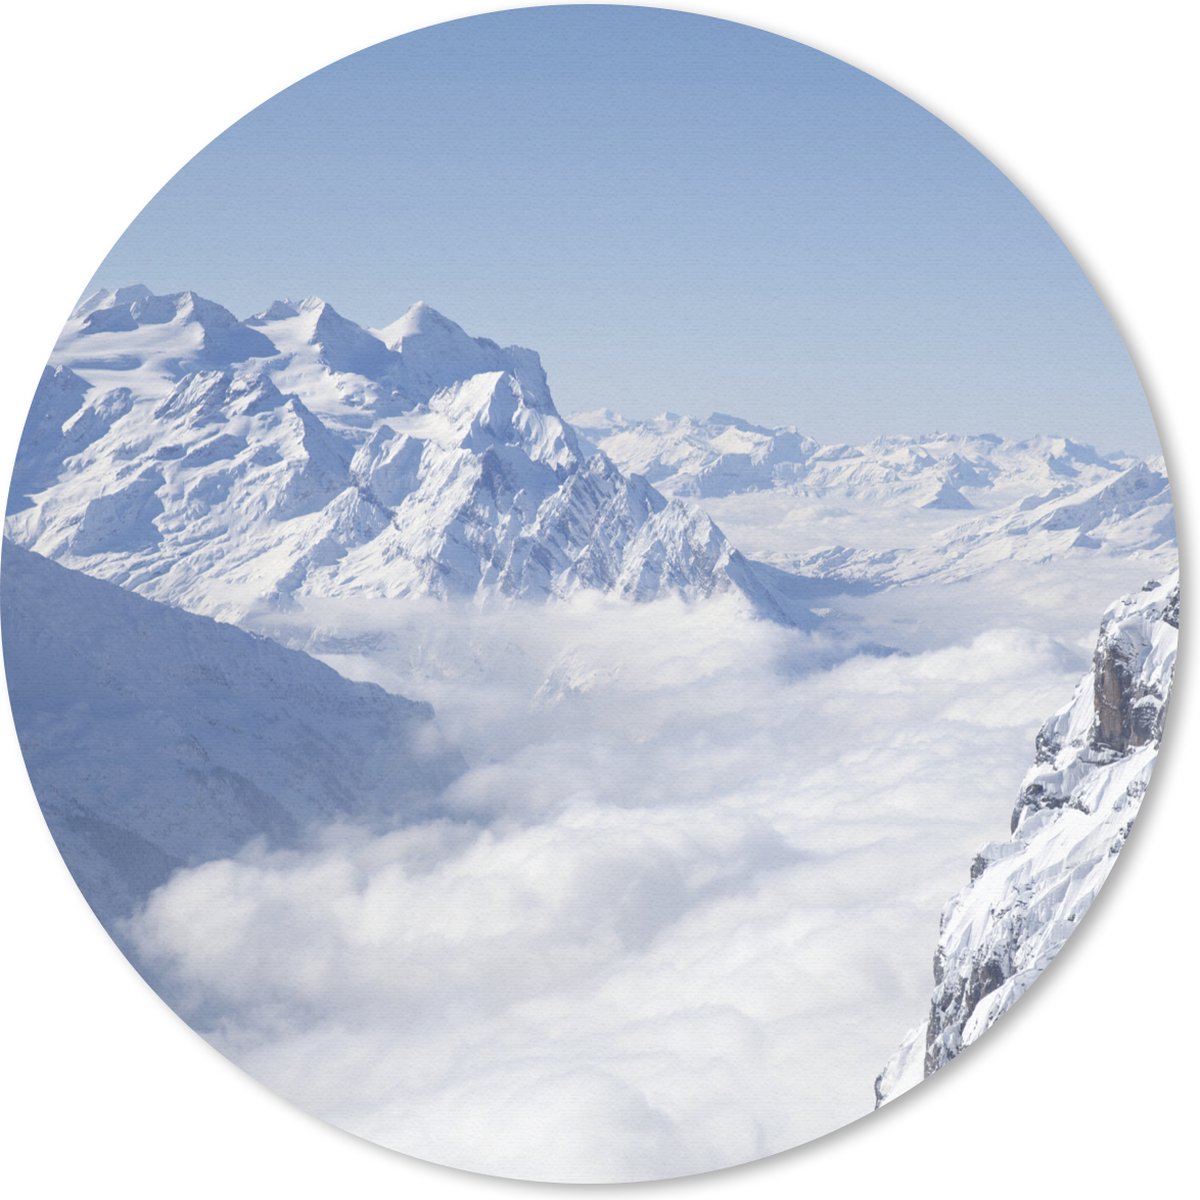 Muismat - Mousepad - Rond - Alpen - Sneeuw - Berg - 30x30 cm - Ronde muismat